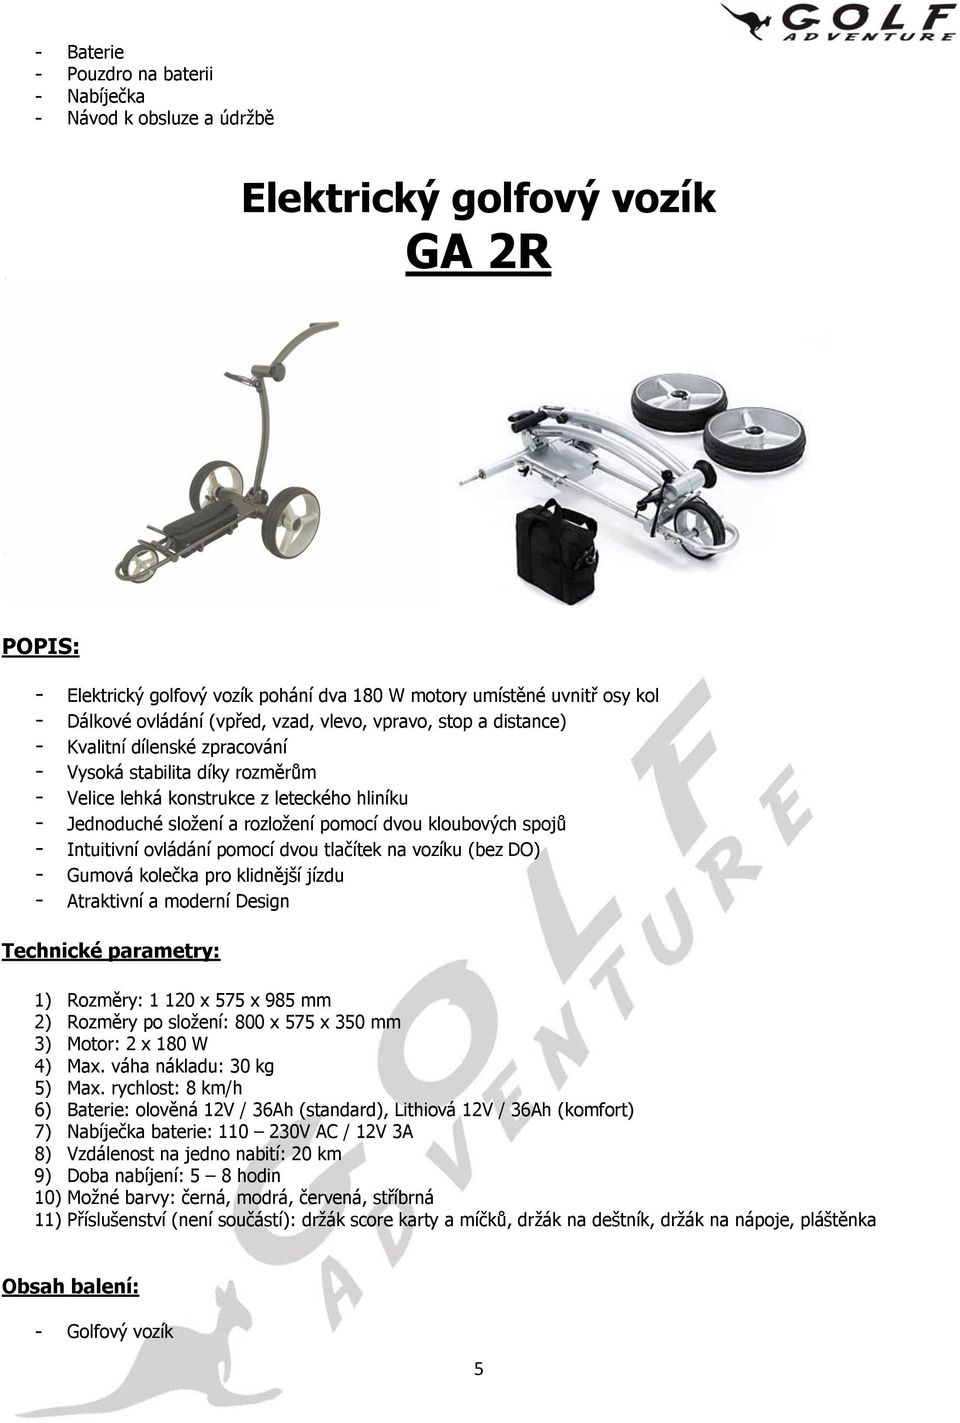 leteckého hliníku - Intuitivní ovládání pomocí dvou tlačítek na vozíku (bez DO) 3) Motor: 2 x 180 W 6)